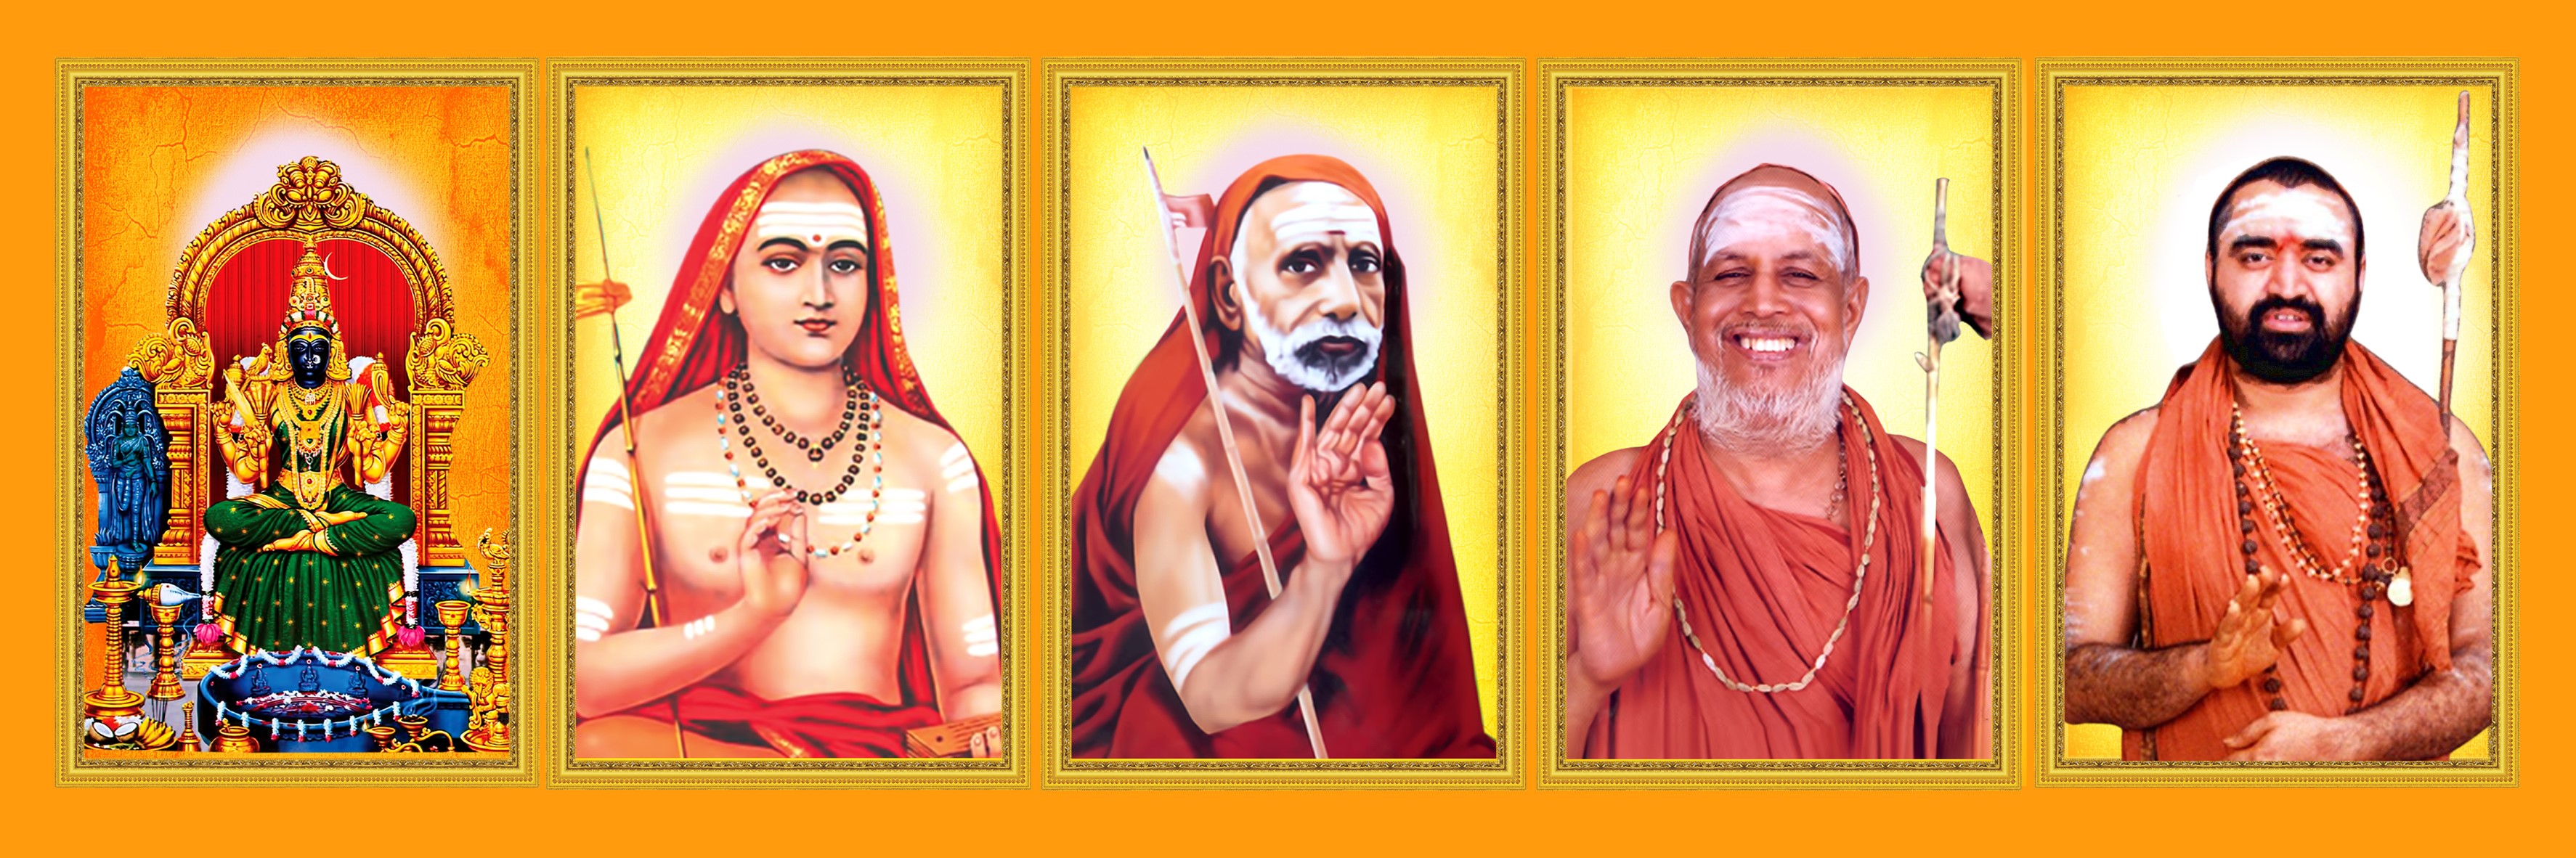 Shankaracharya Swamiji శ్రీ శంకరాచార్య స్వామివారు